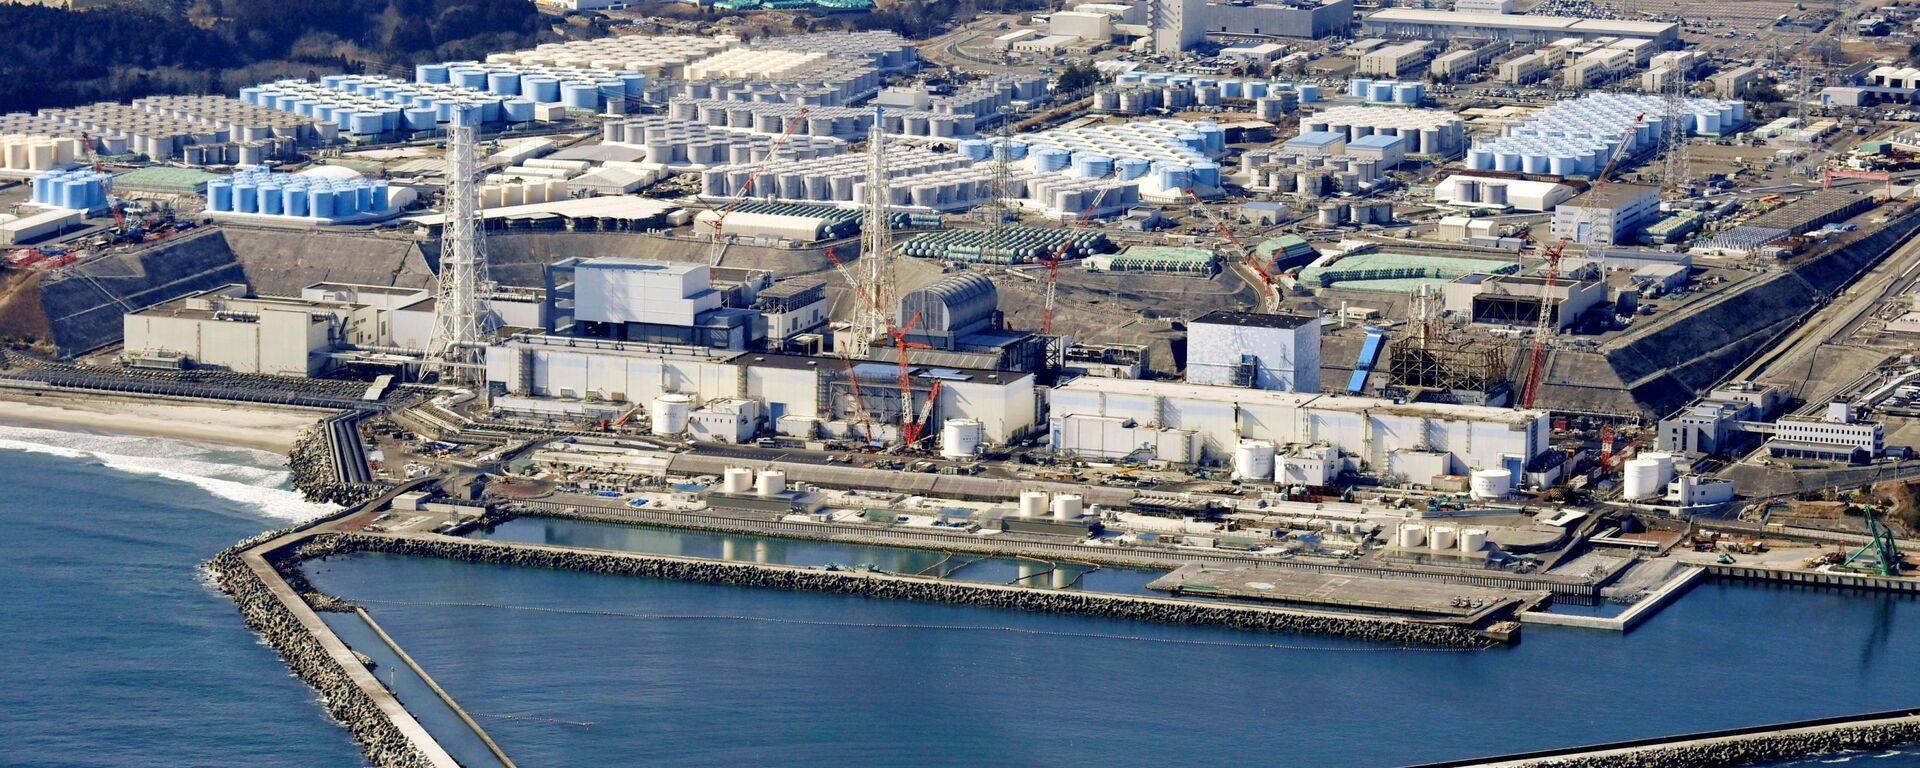 韩国在野党代表考察福岛核电站 反对核污染水排海